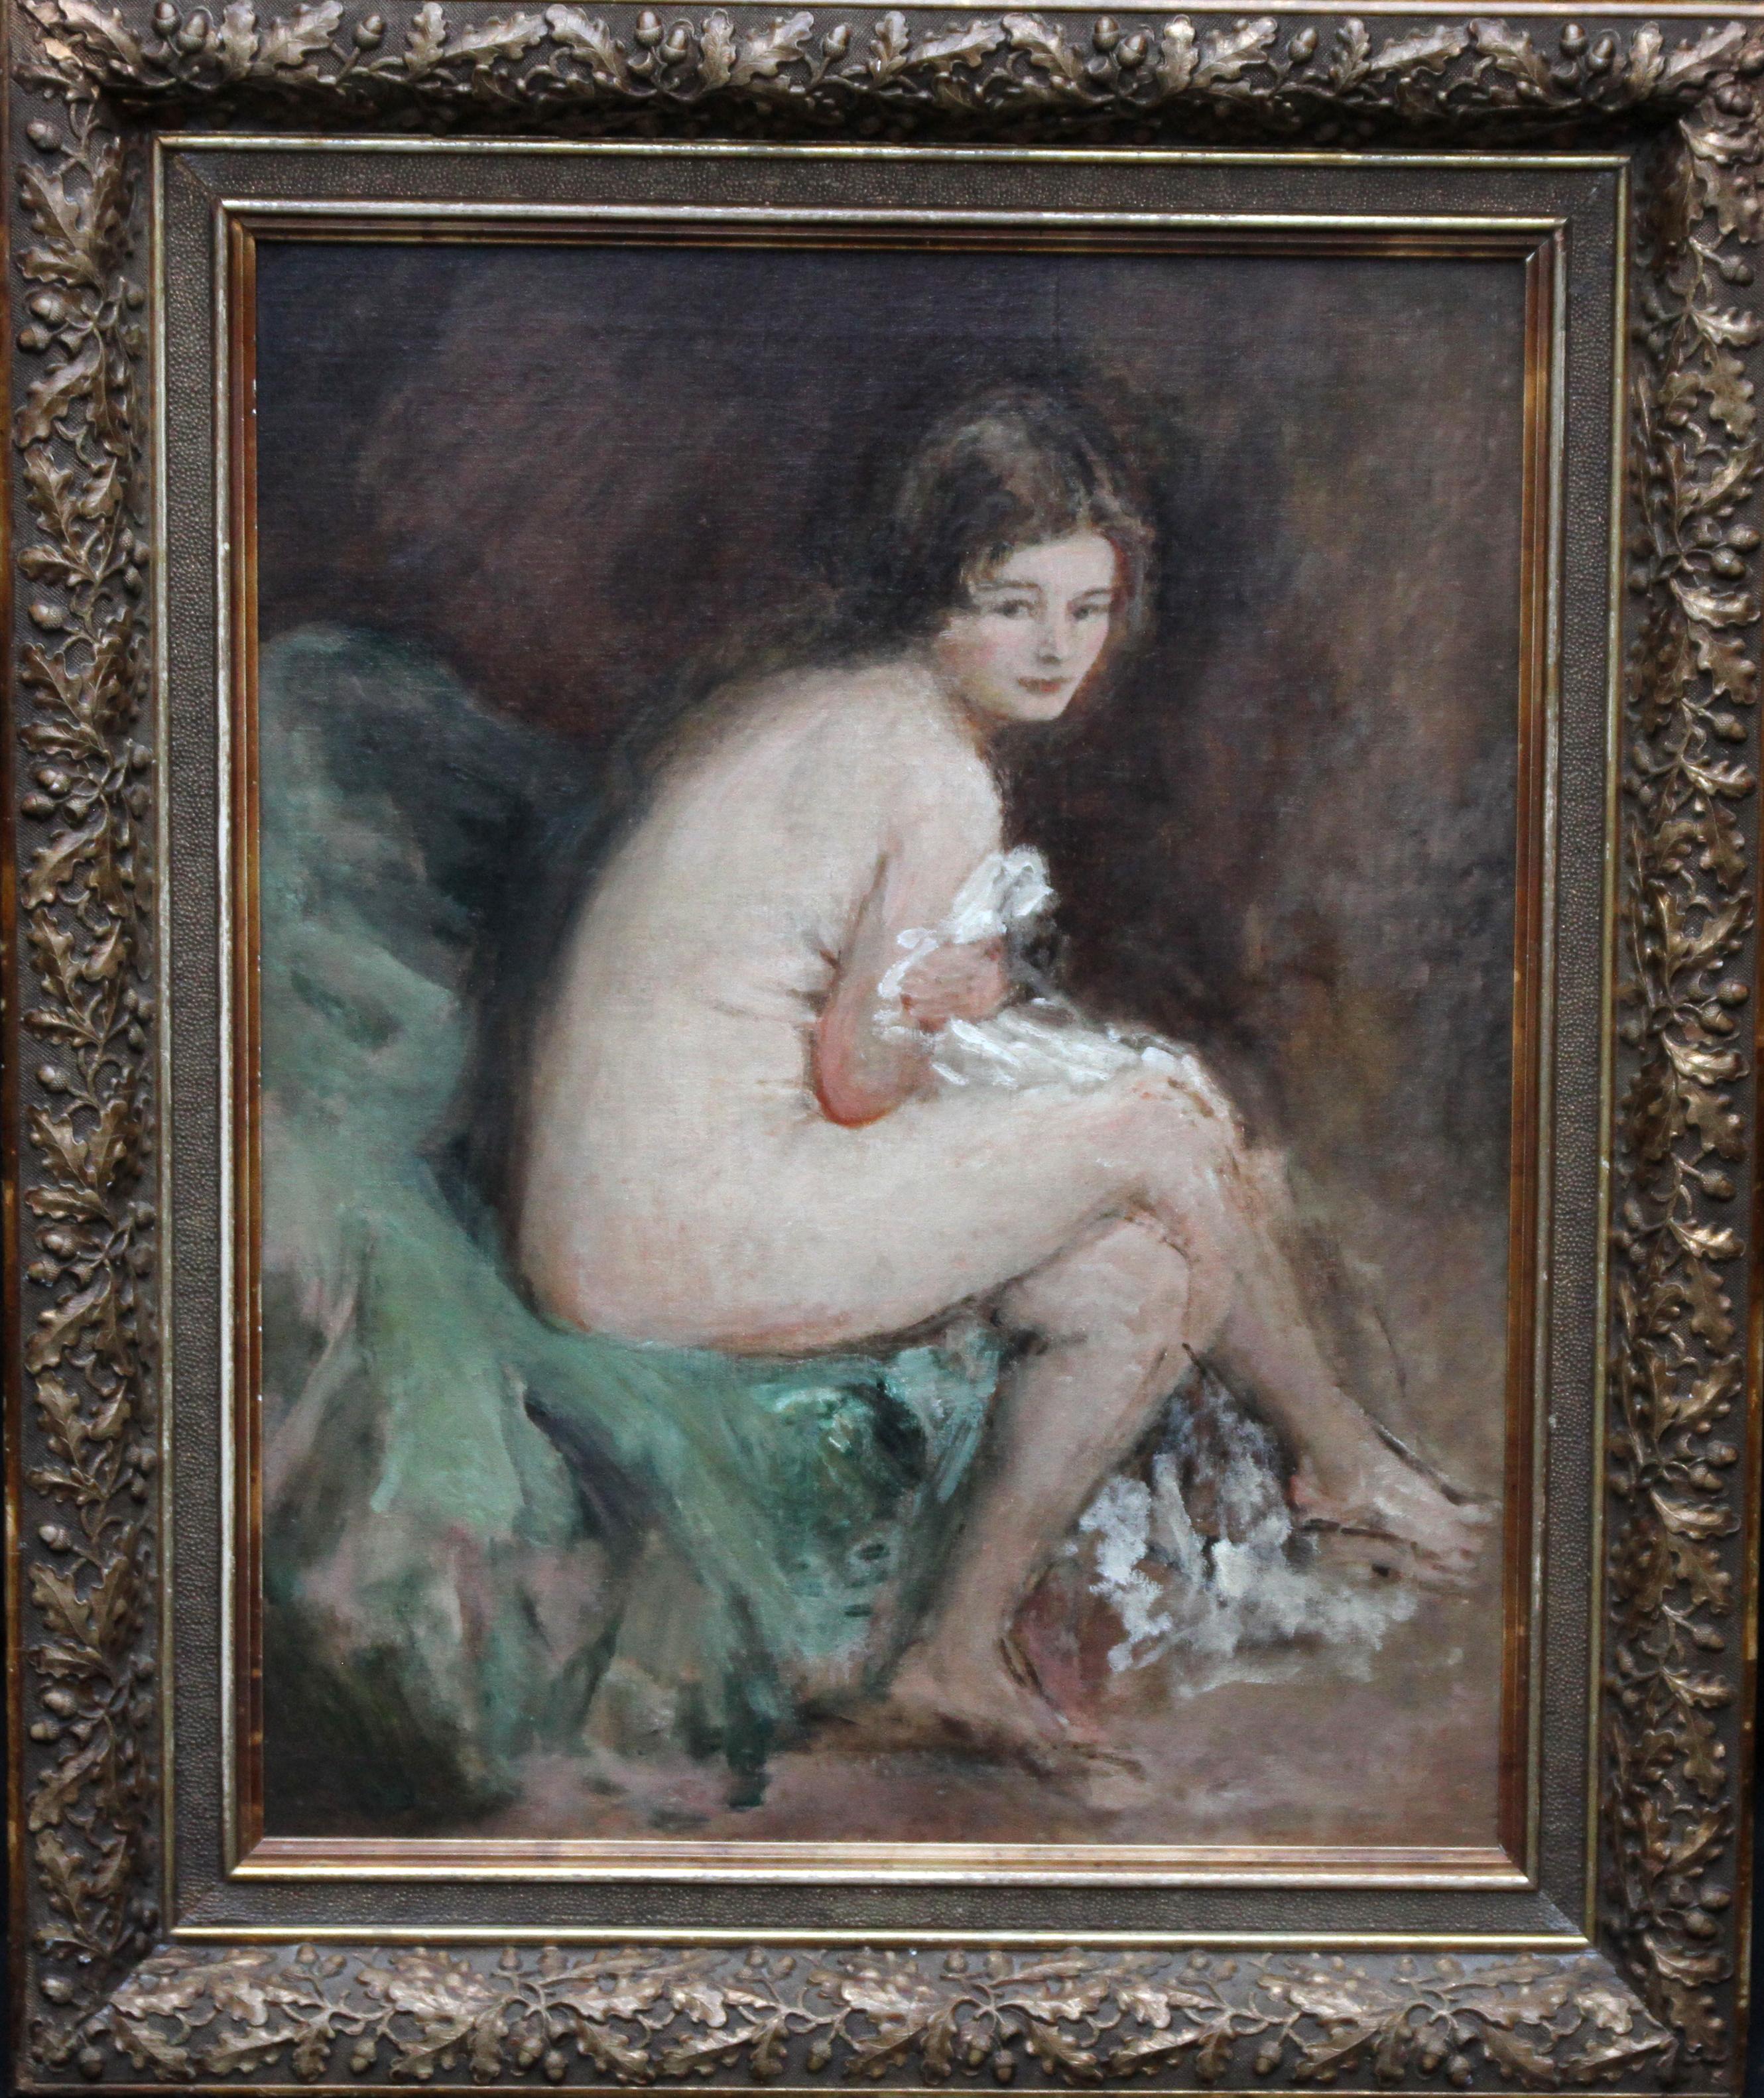 Portrait Painting Philip Wilson Steer - Portrait de femme nue - Susannah - Peinture à l'huile impressionniste britannique des années 20